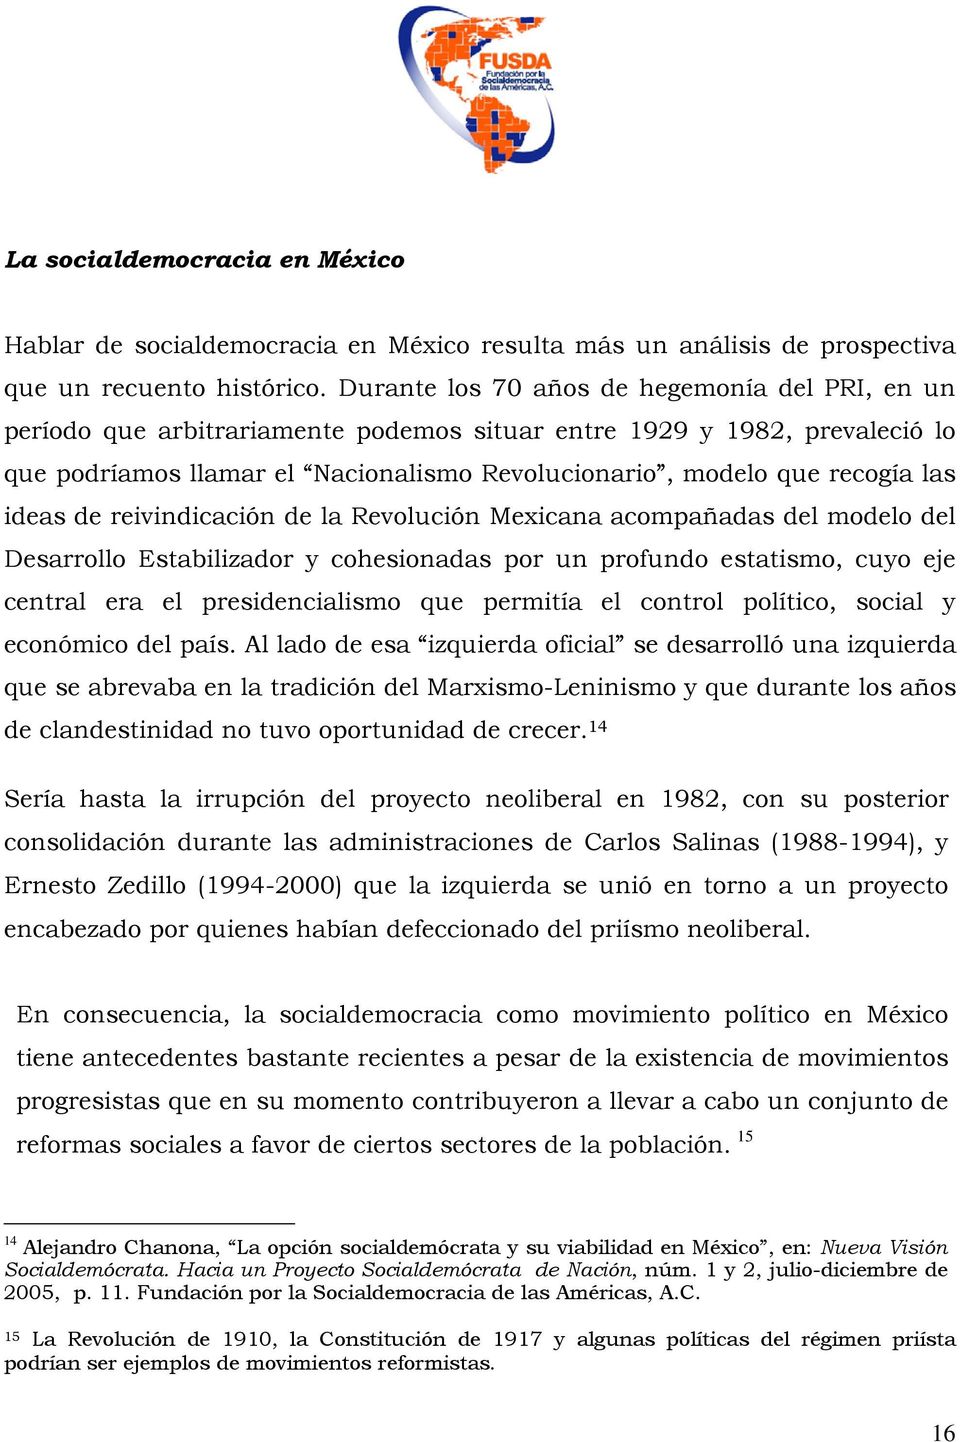 ideas de reivindicación de la Revolución Mexicana acompañadas del modelo del Desarrollo Estabilizador y cohesionadas por un profundo estatismo, cuyo eje central era el presidencialismo que permitía